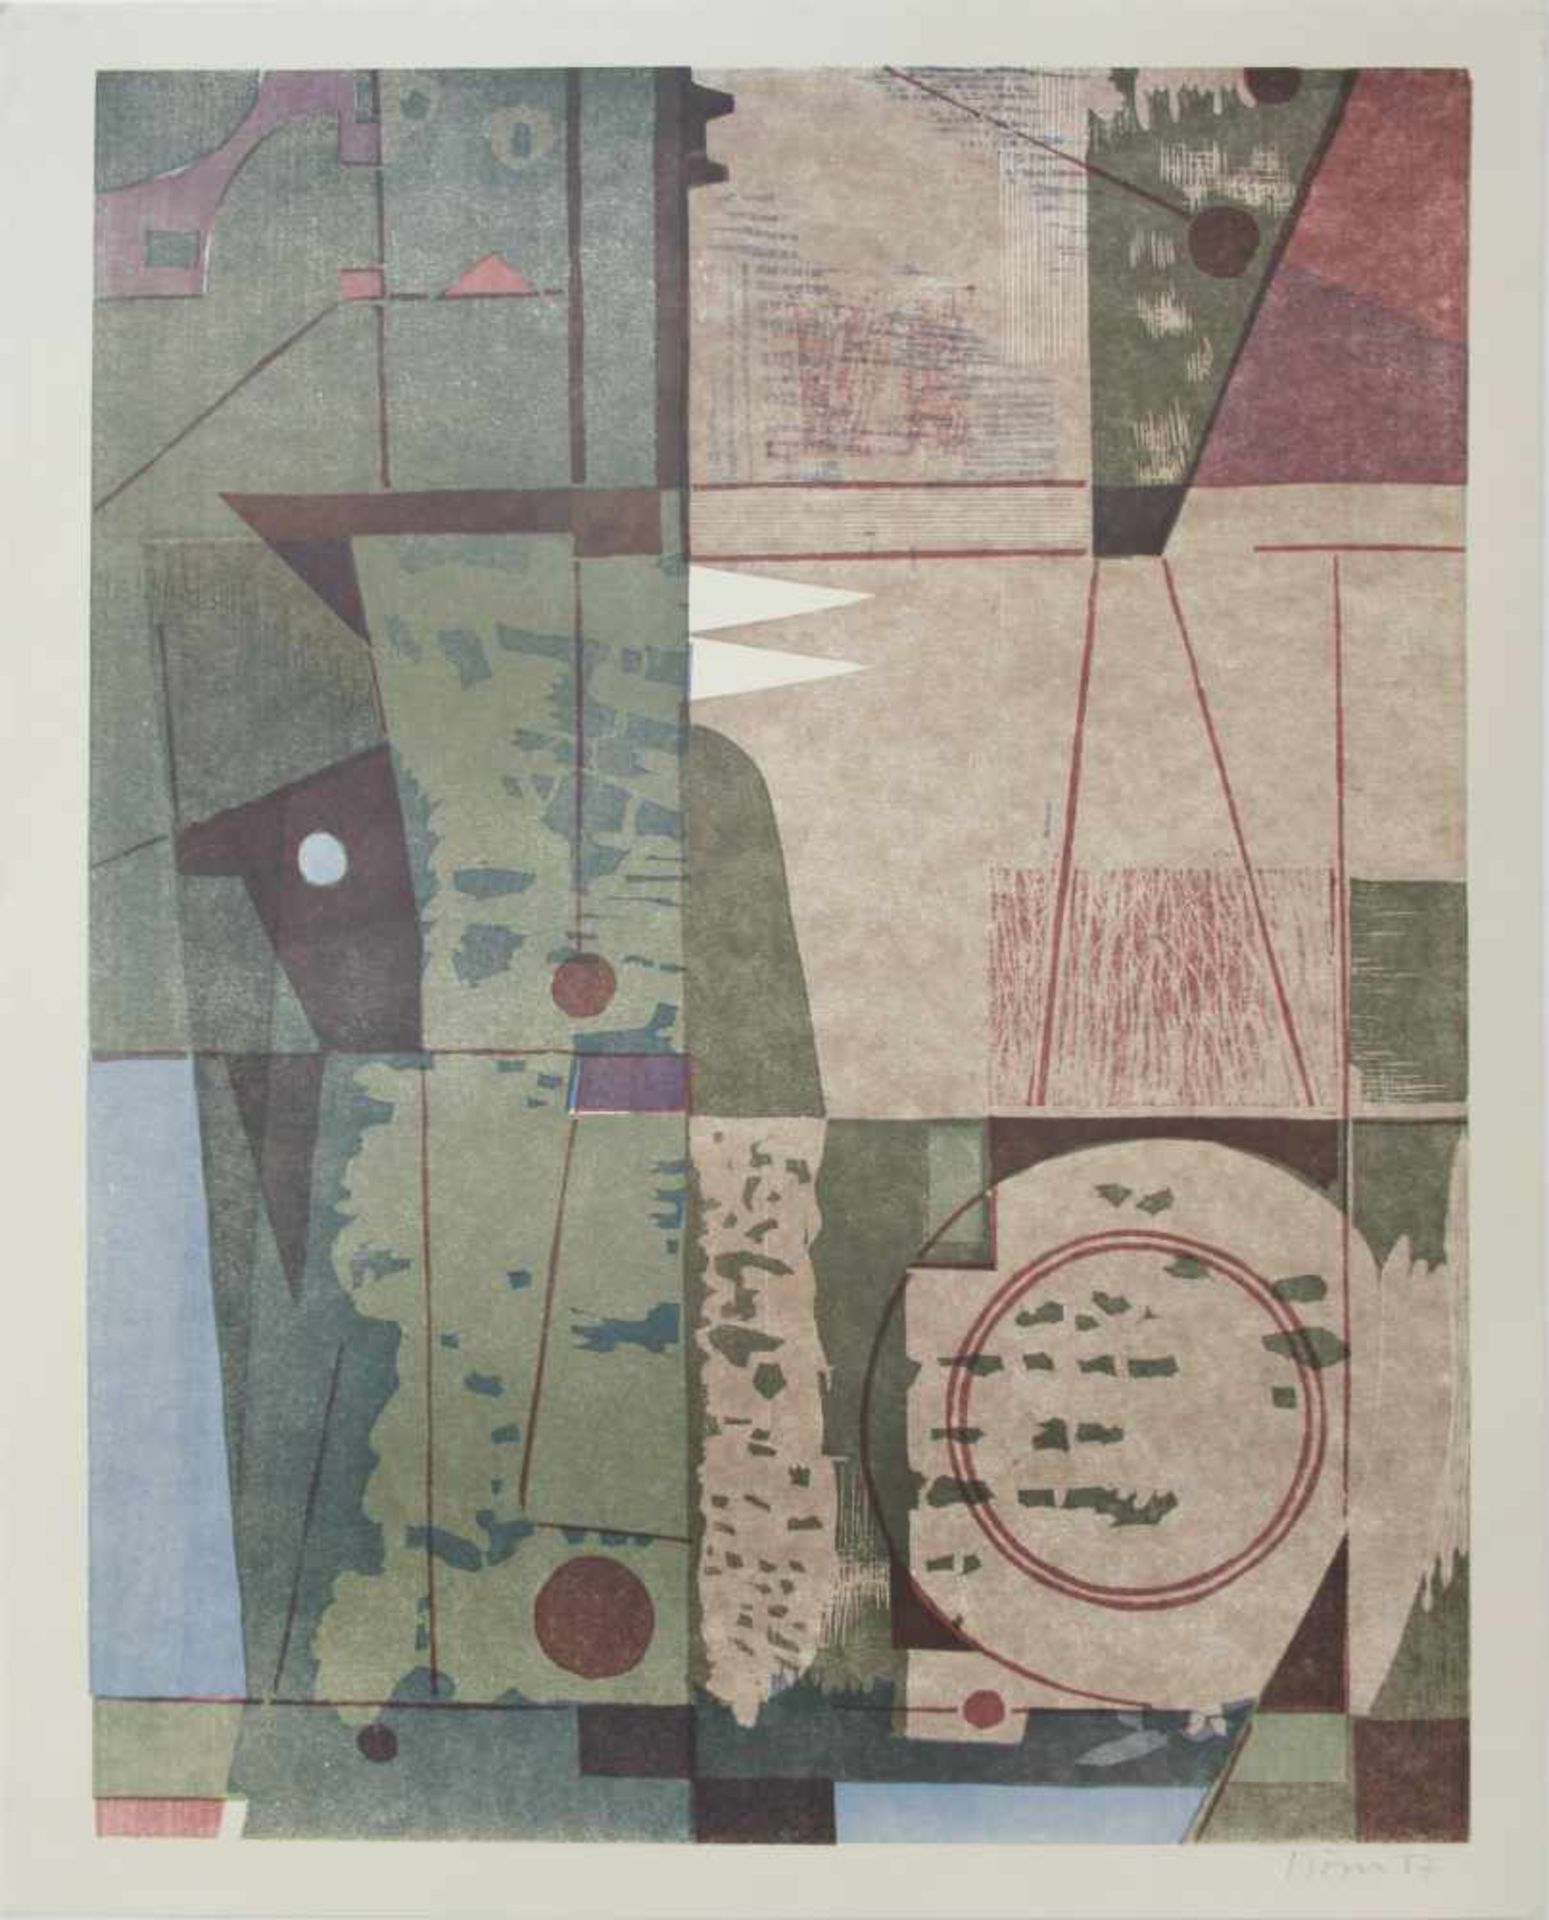 Plöser KurtOhne Titel1957Siebdruck, handsigniert50 x 39 cm